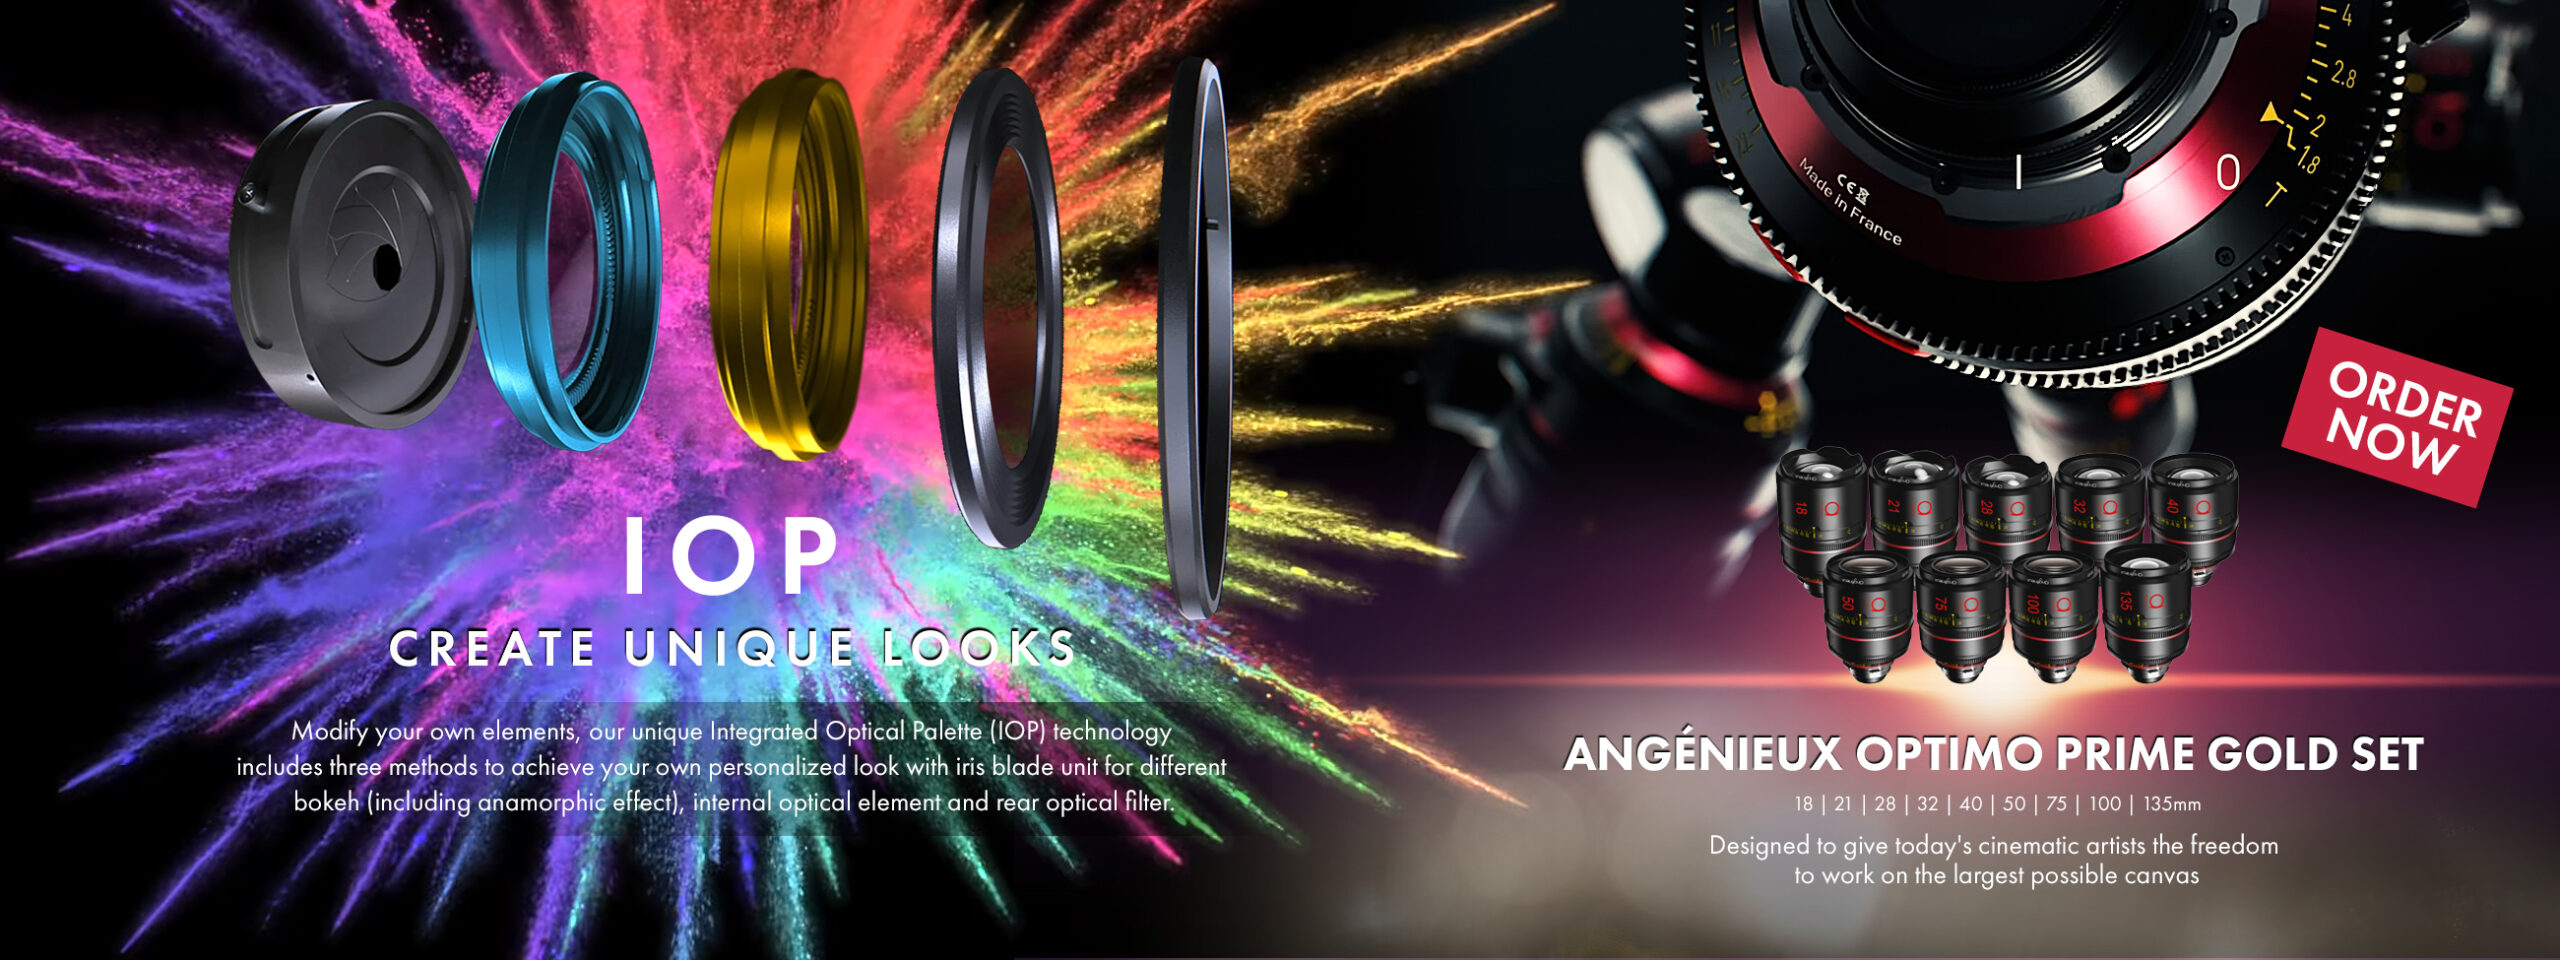 Brand: Angenieux & IOP Tools